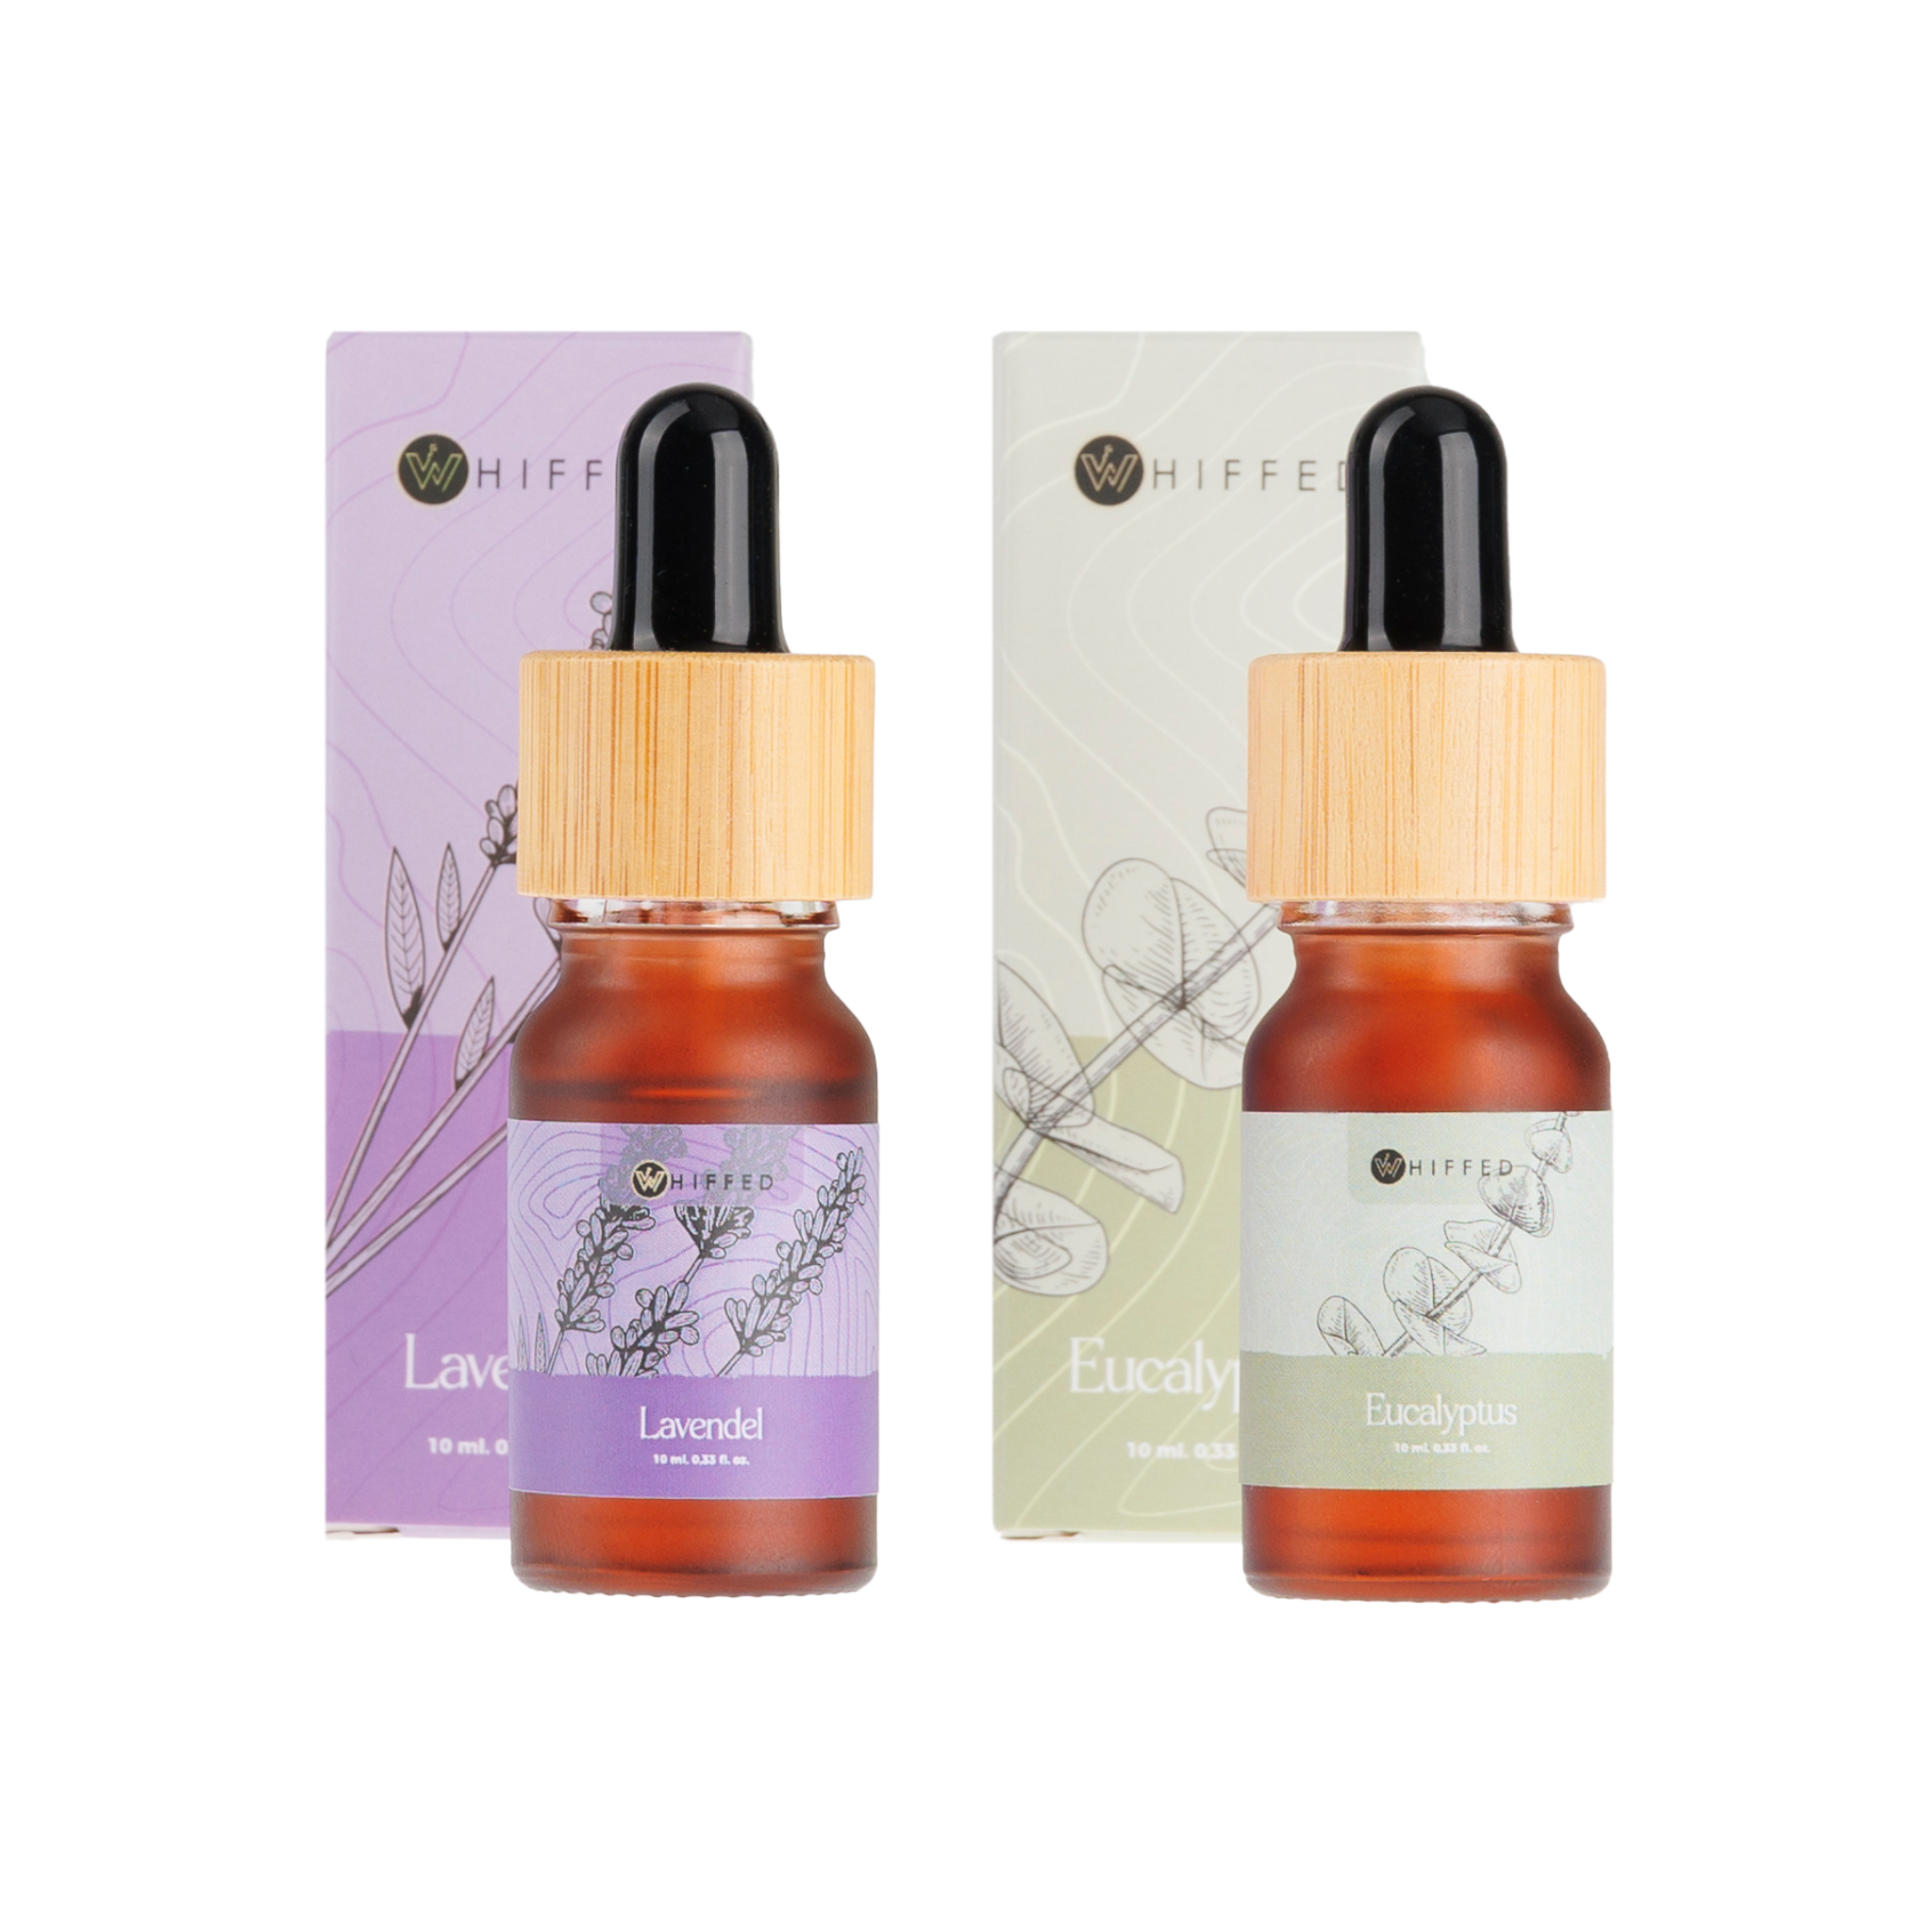 whiffed_show - 10ml duo-pakket van lavendel en eucalyptus etherische oliën, ideaal voor rustgevende aromatherapie en verlichting van de luchtwegen.